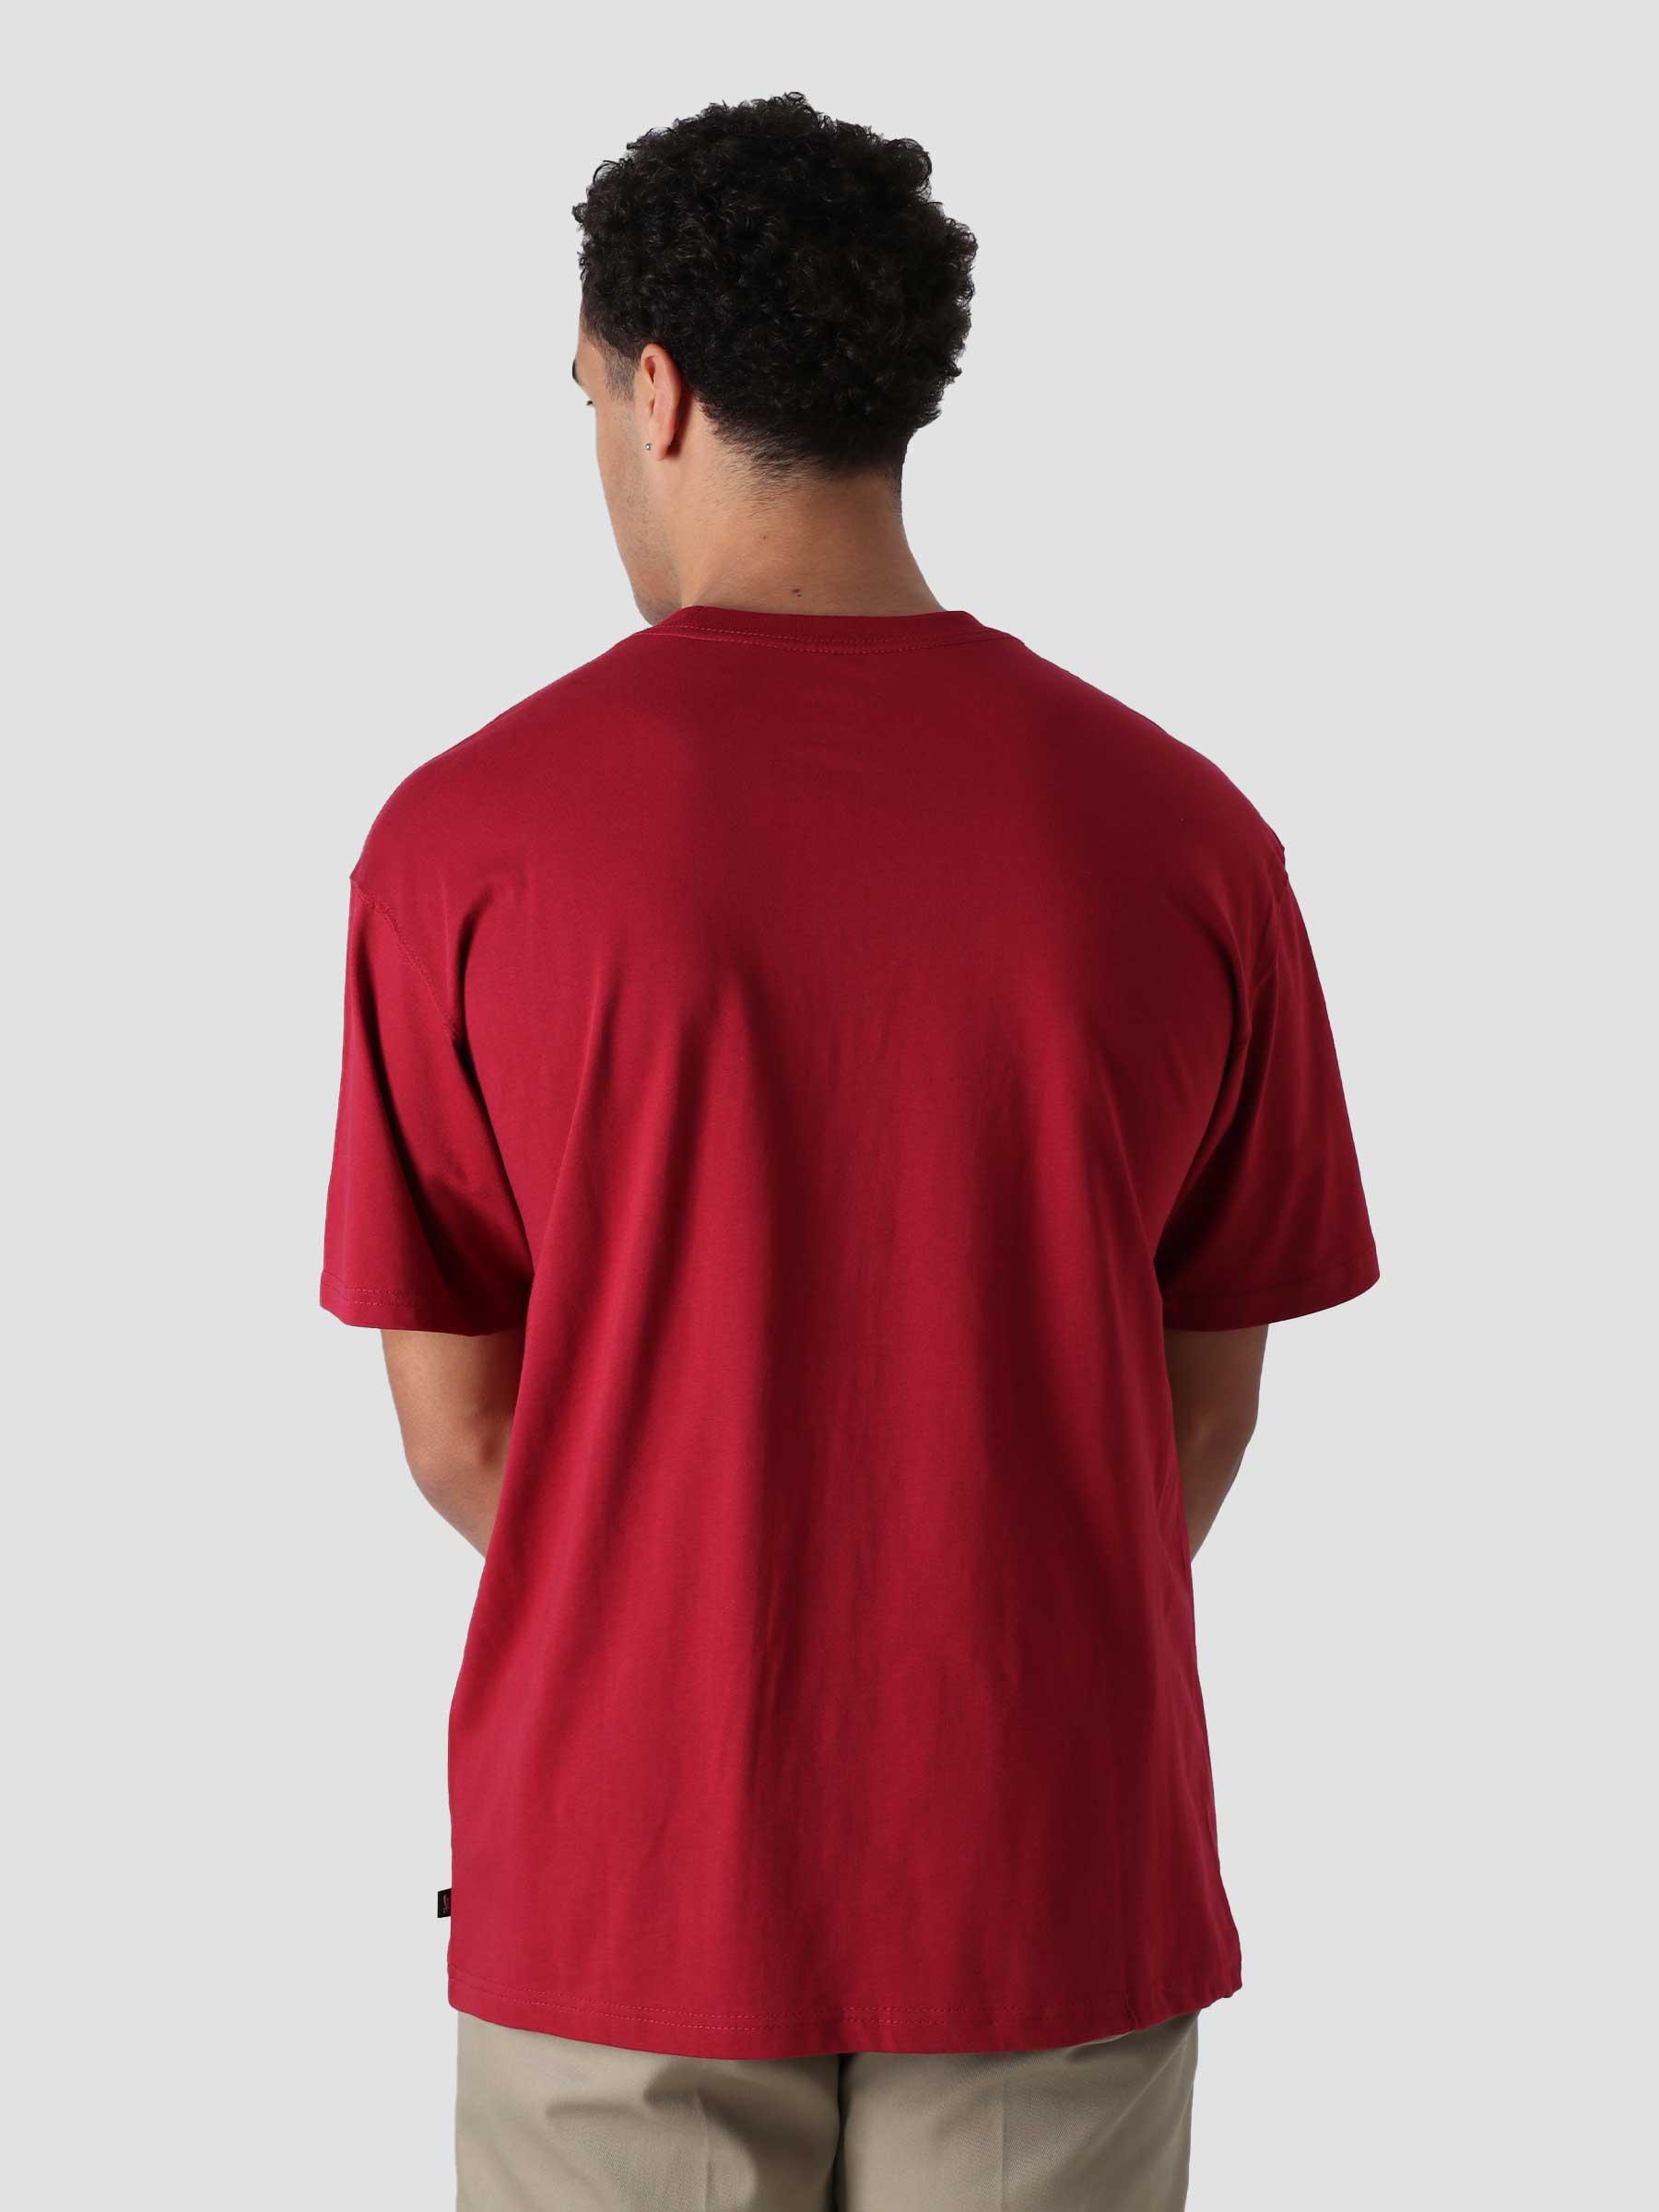 M NK SB T-Shirt Firry Pomegranate DM2243-690